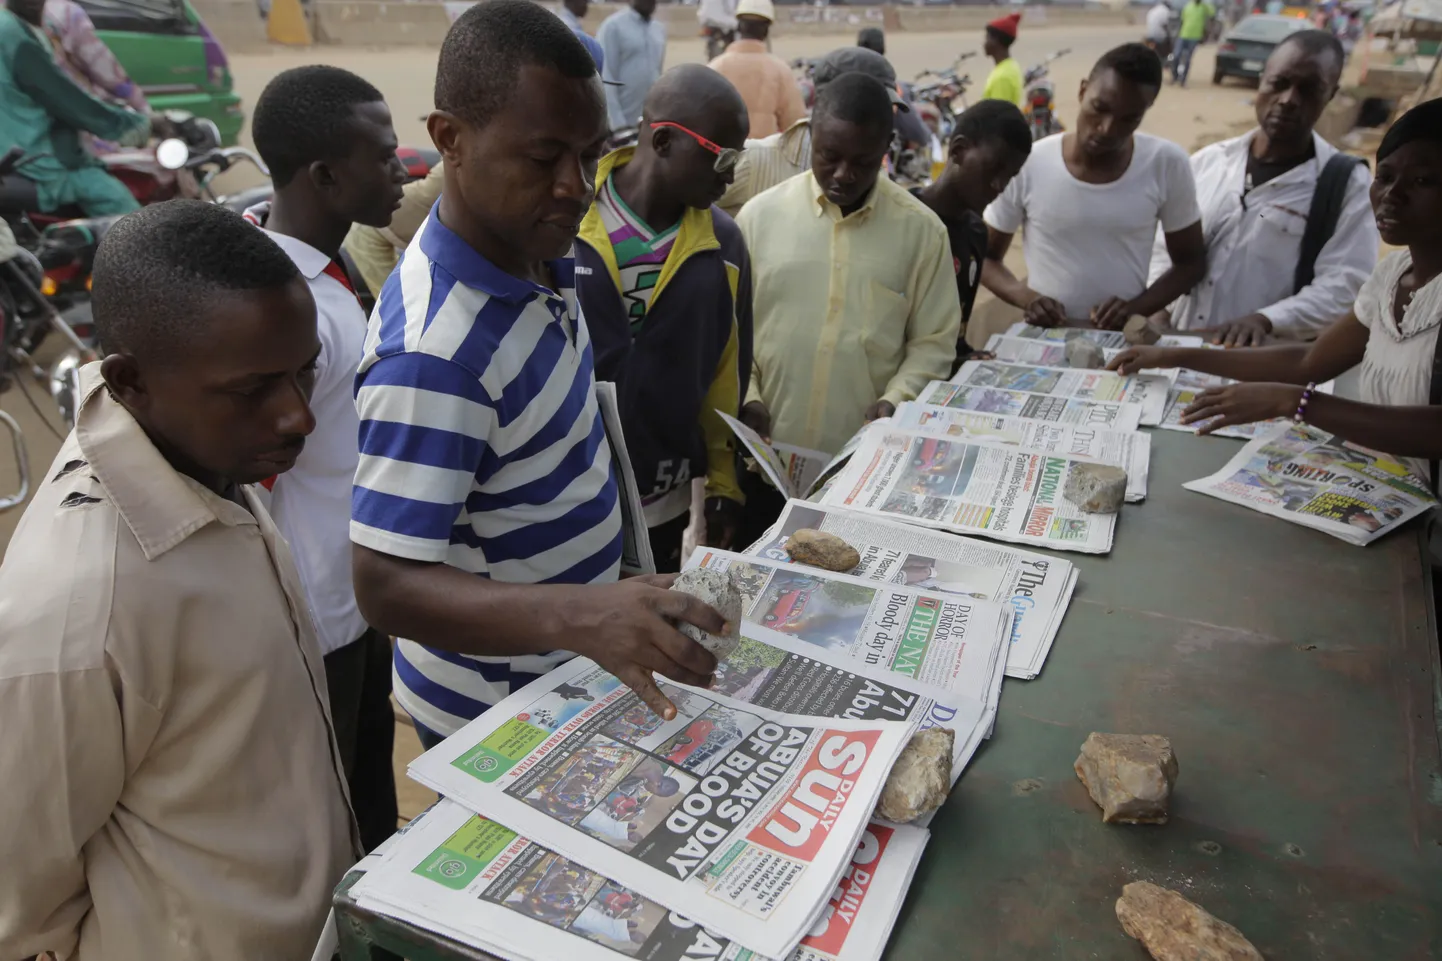 Täna täitis kõikide Nigeeria ajalehtede esikülgi eile toimunud ohvriterohke pommiplahvatuse kajastus.